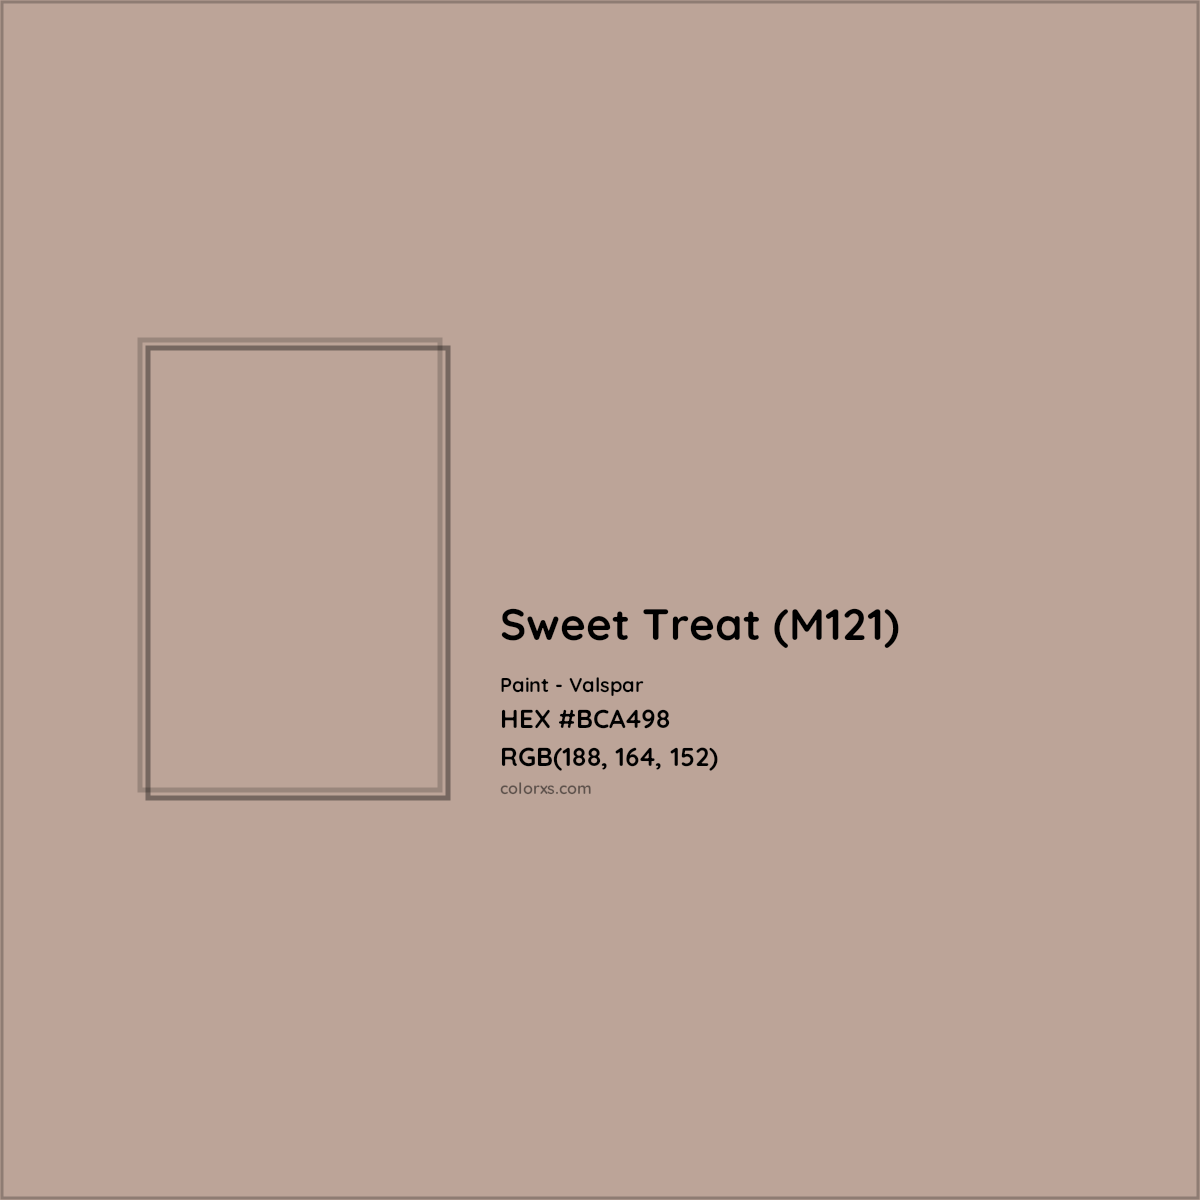 HEX #BCA498 Sweet Treat (M121) Paint Valspar - Color Code